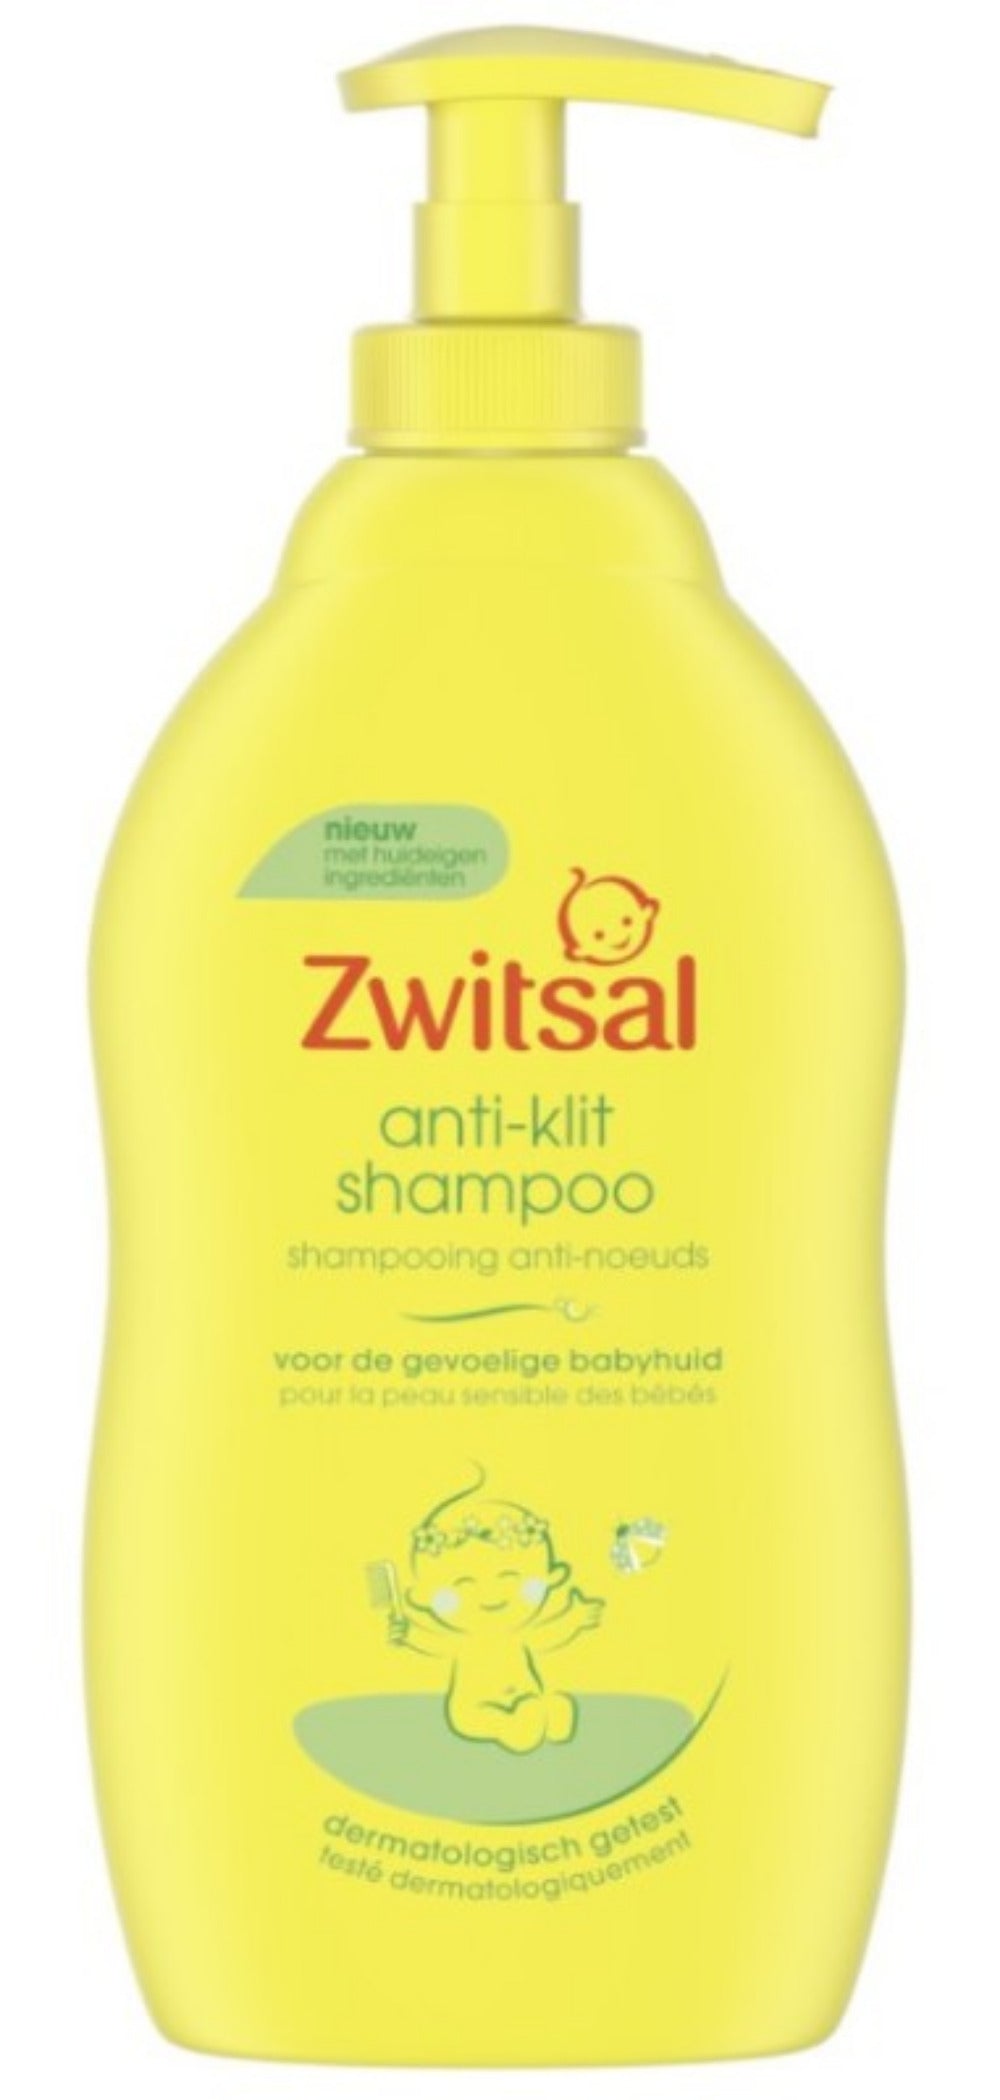 Zwitsal Shampoo Anti Klit